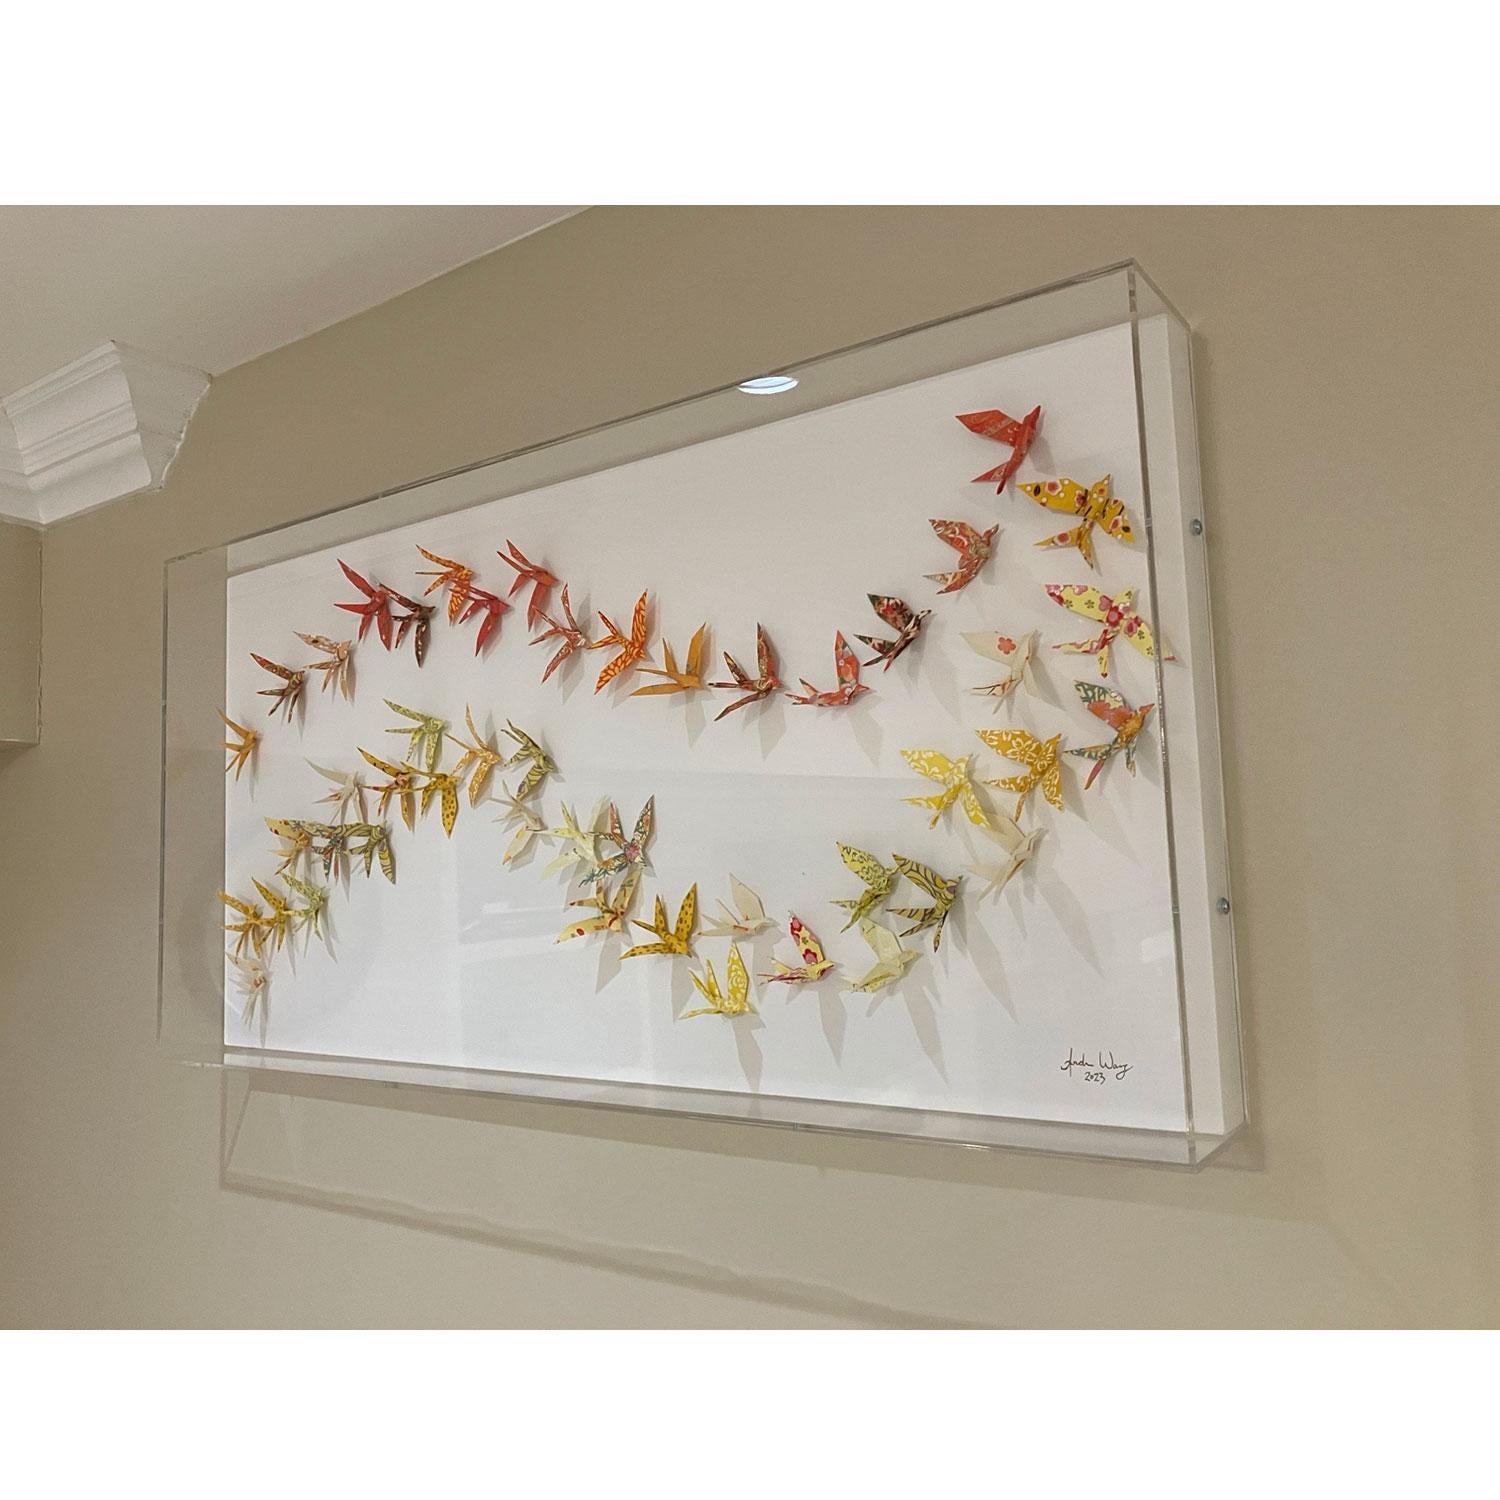 Dieses einzigartige Origami-Werk zeigt Hunderte von handgefalteten Chiyogami-Papiervögeln, die präzise auf eine Holzplatte montiert und in eine elegante Acryl-Schattenbox gerahmt sind.

Andrew Wang erkundet große Reisen durch Origami-Assemblage,